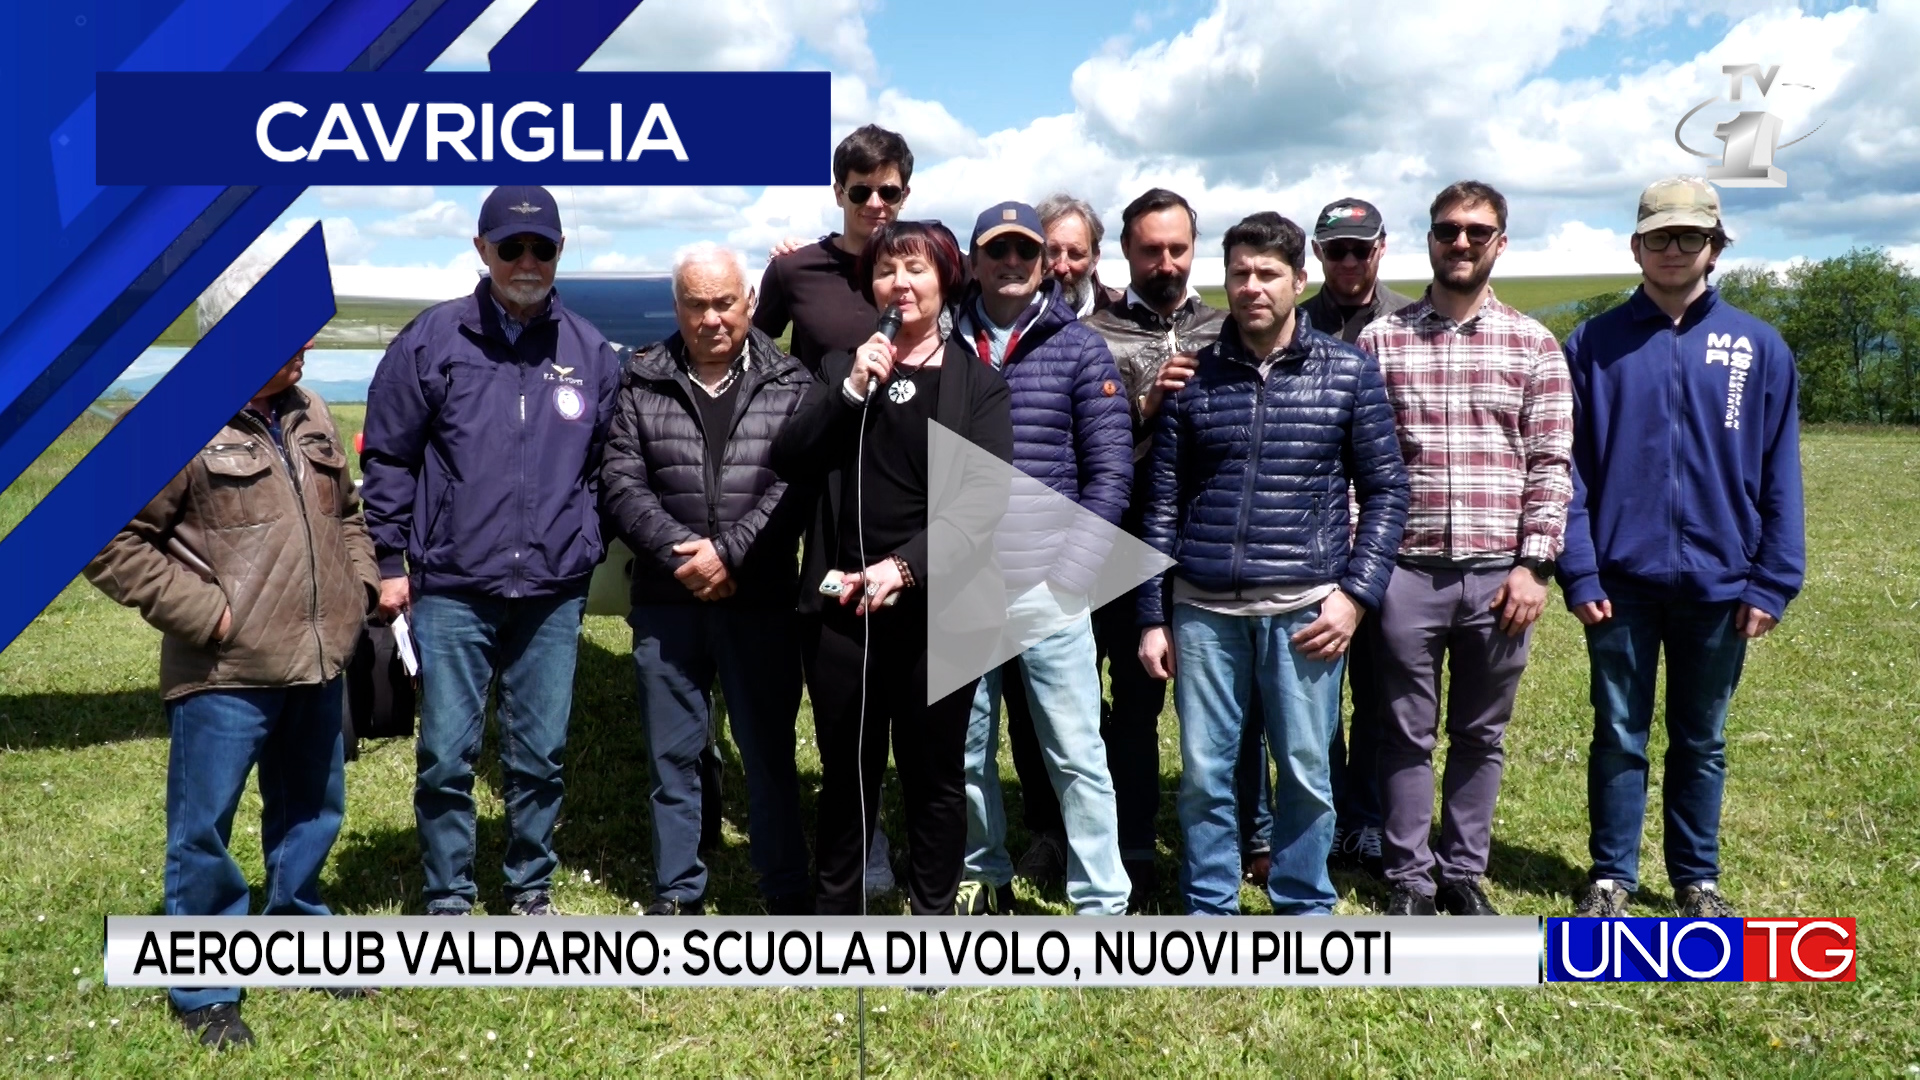 Aeroclub Valdarno: scuola di volo, nuovi piloti